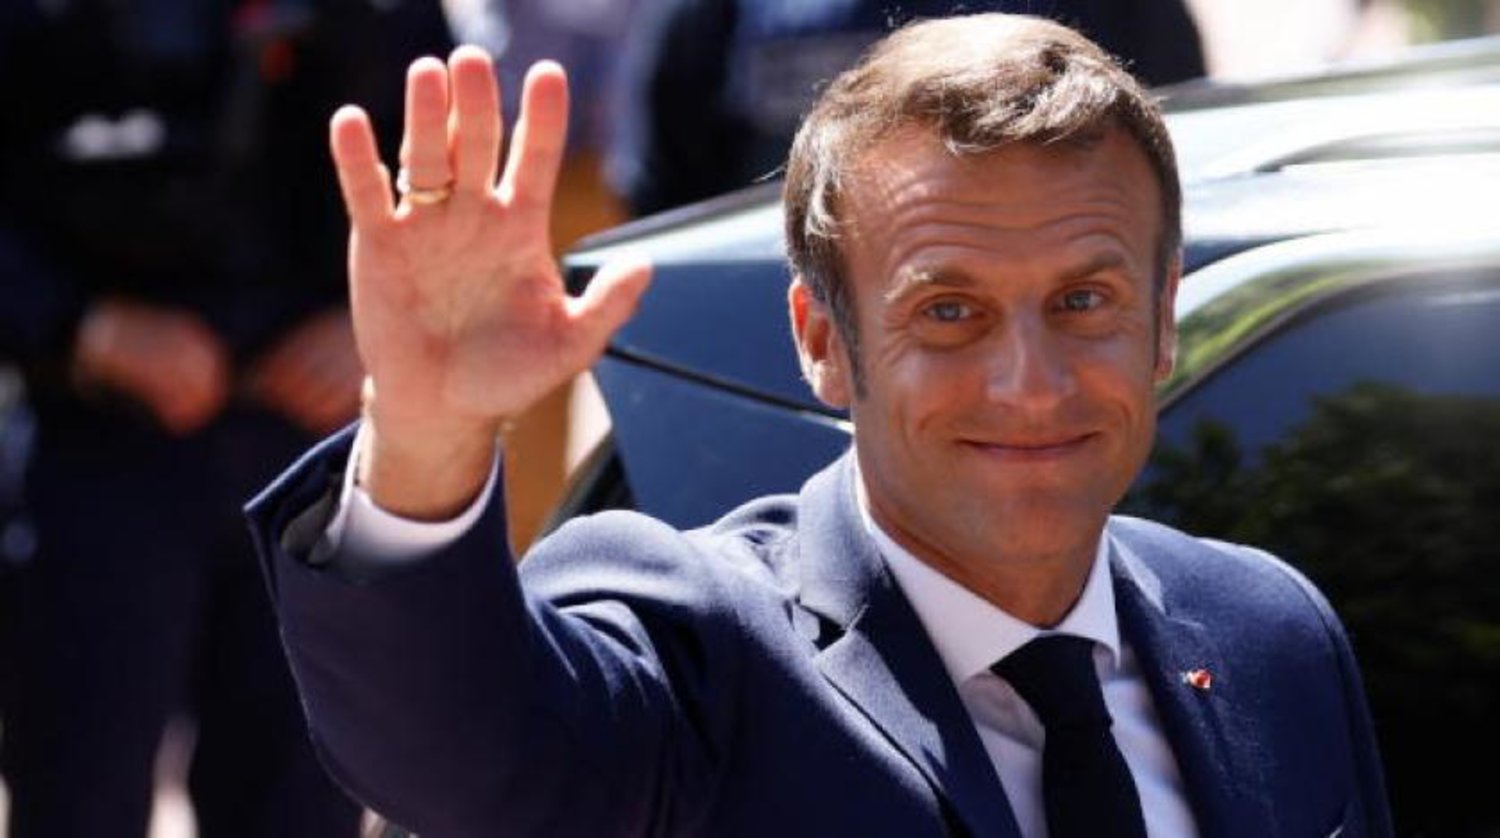 Macron, bugün Fransa Parlamentosu seçimlerinin ilk turunda oyunu kullandıktan sonra (Reuters)
